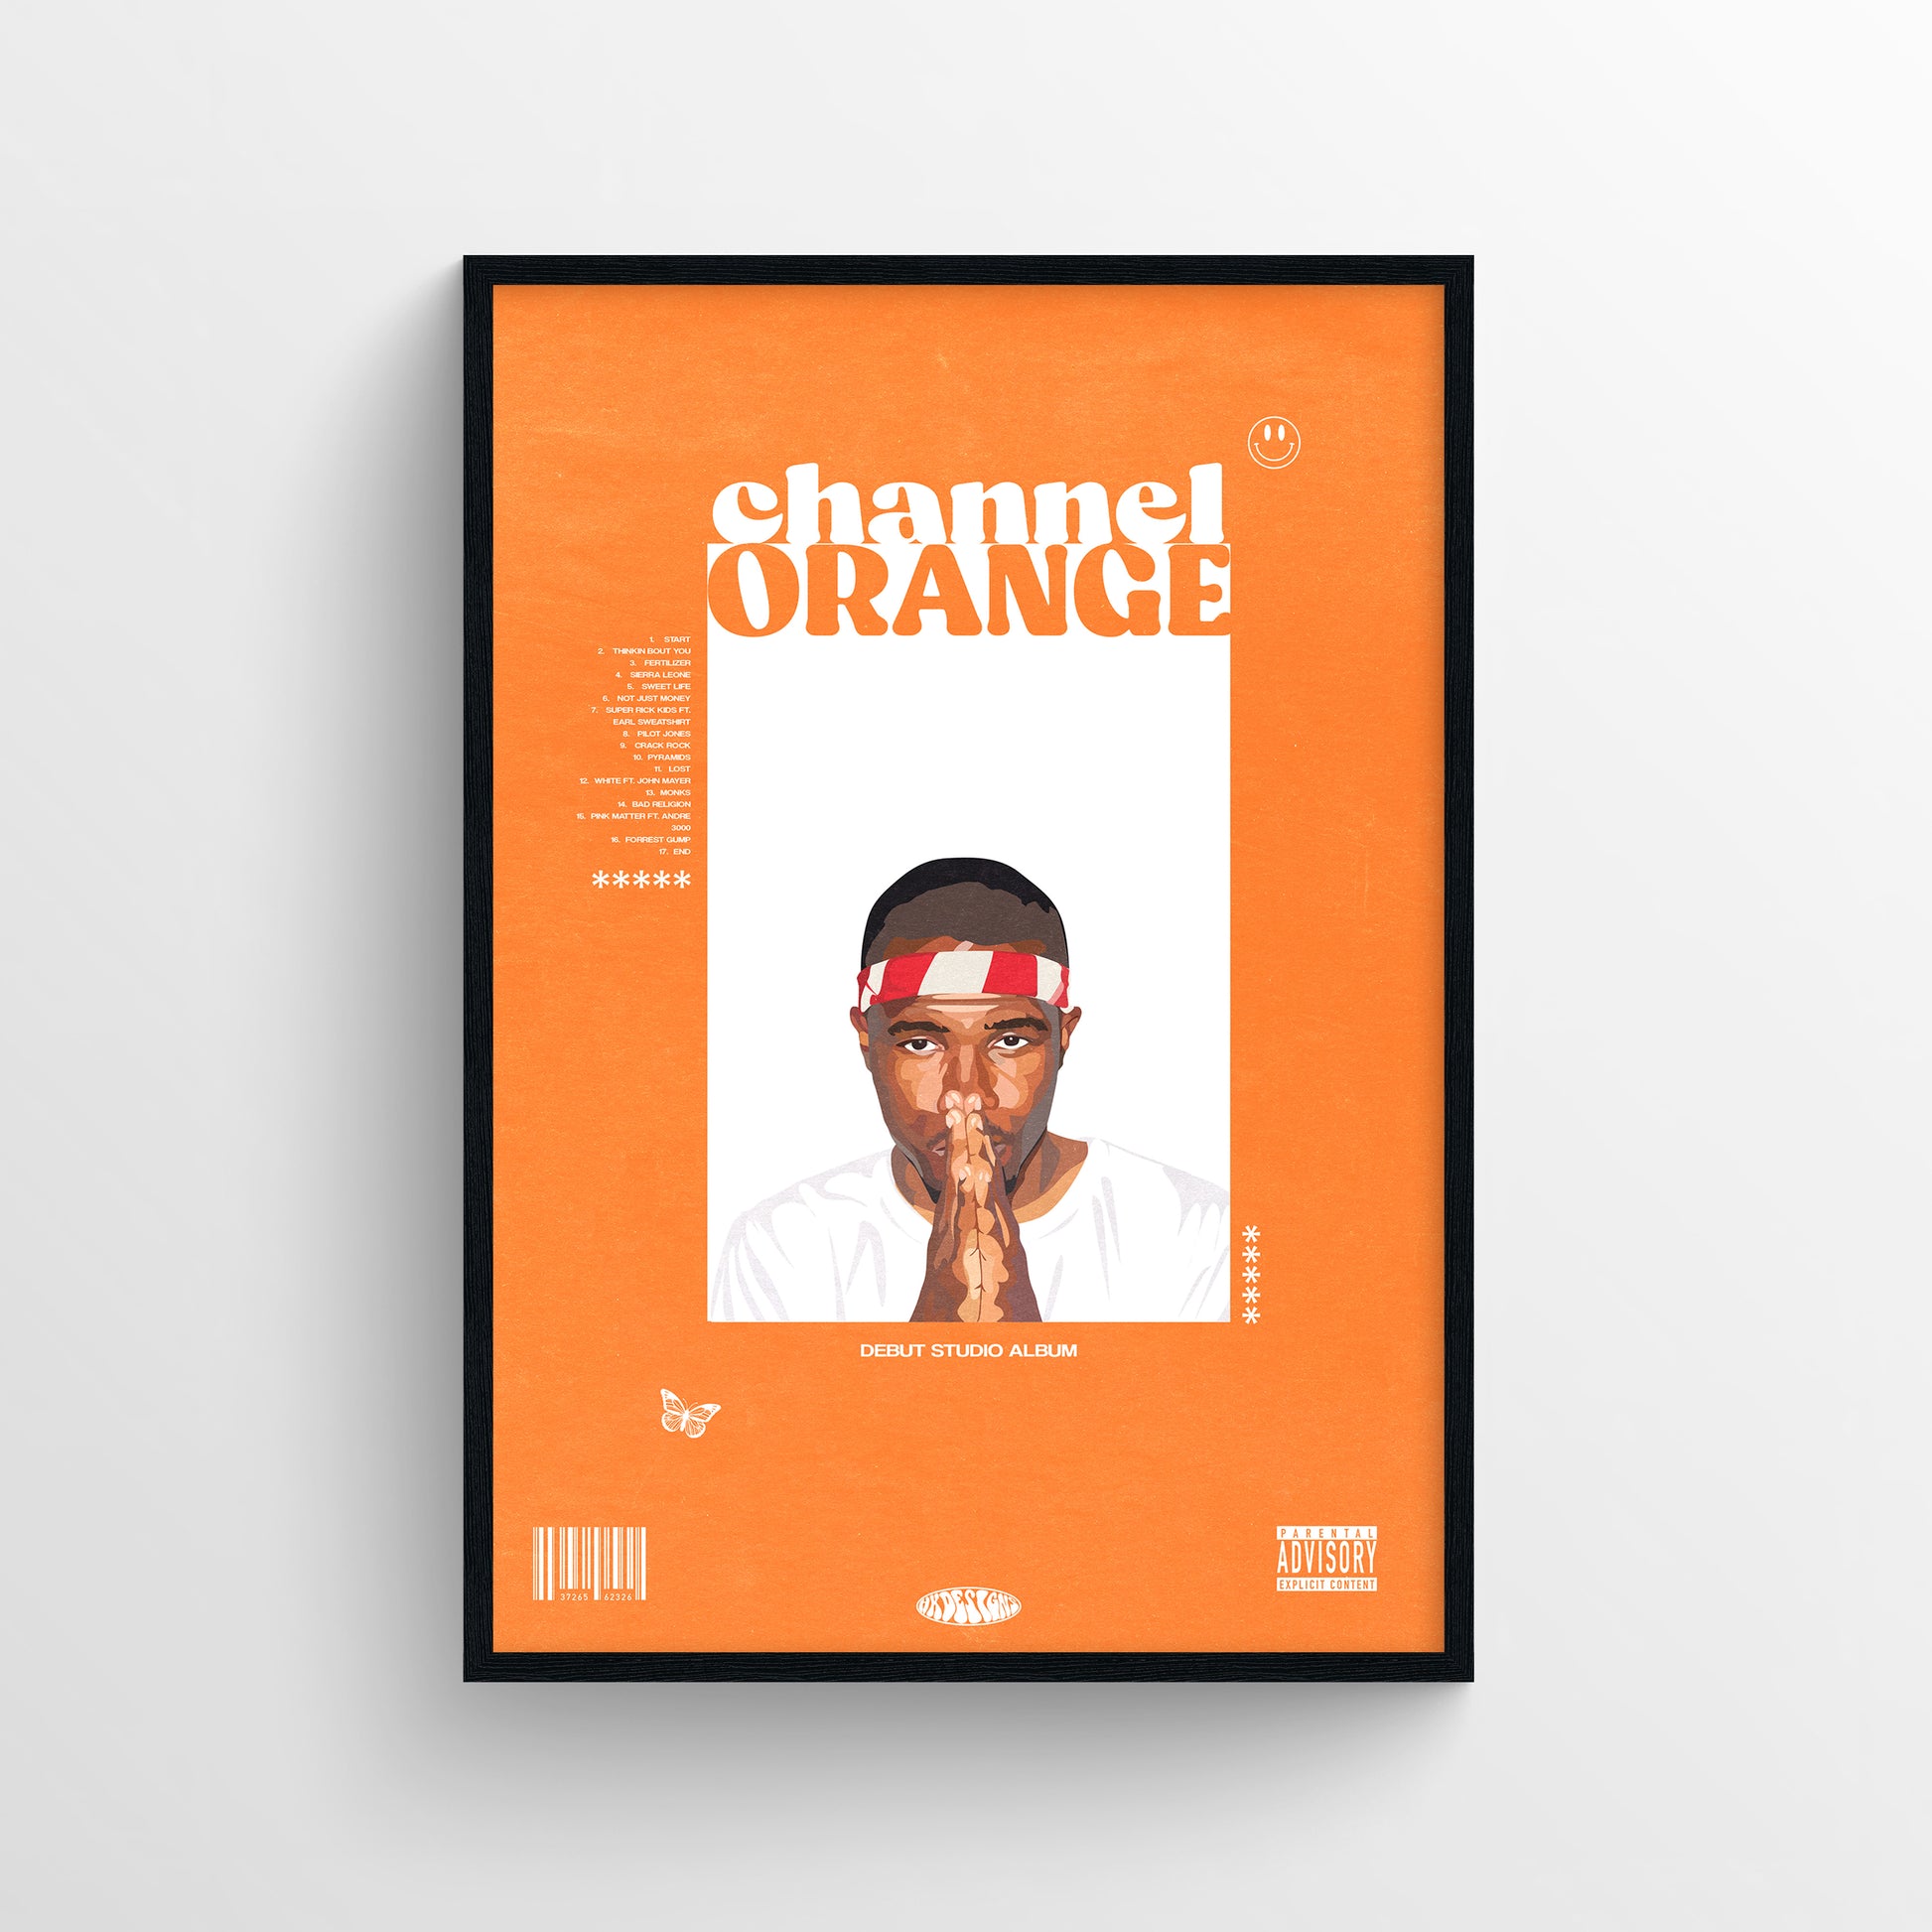 channel ORANGE' by Frank Ocean – HK Designs